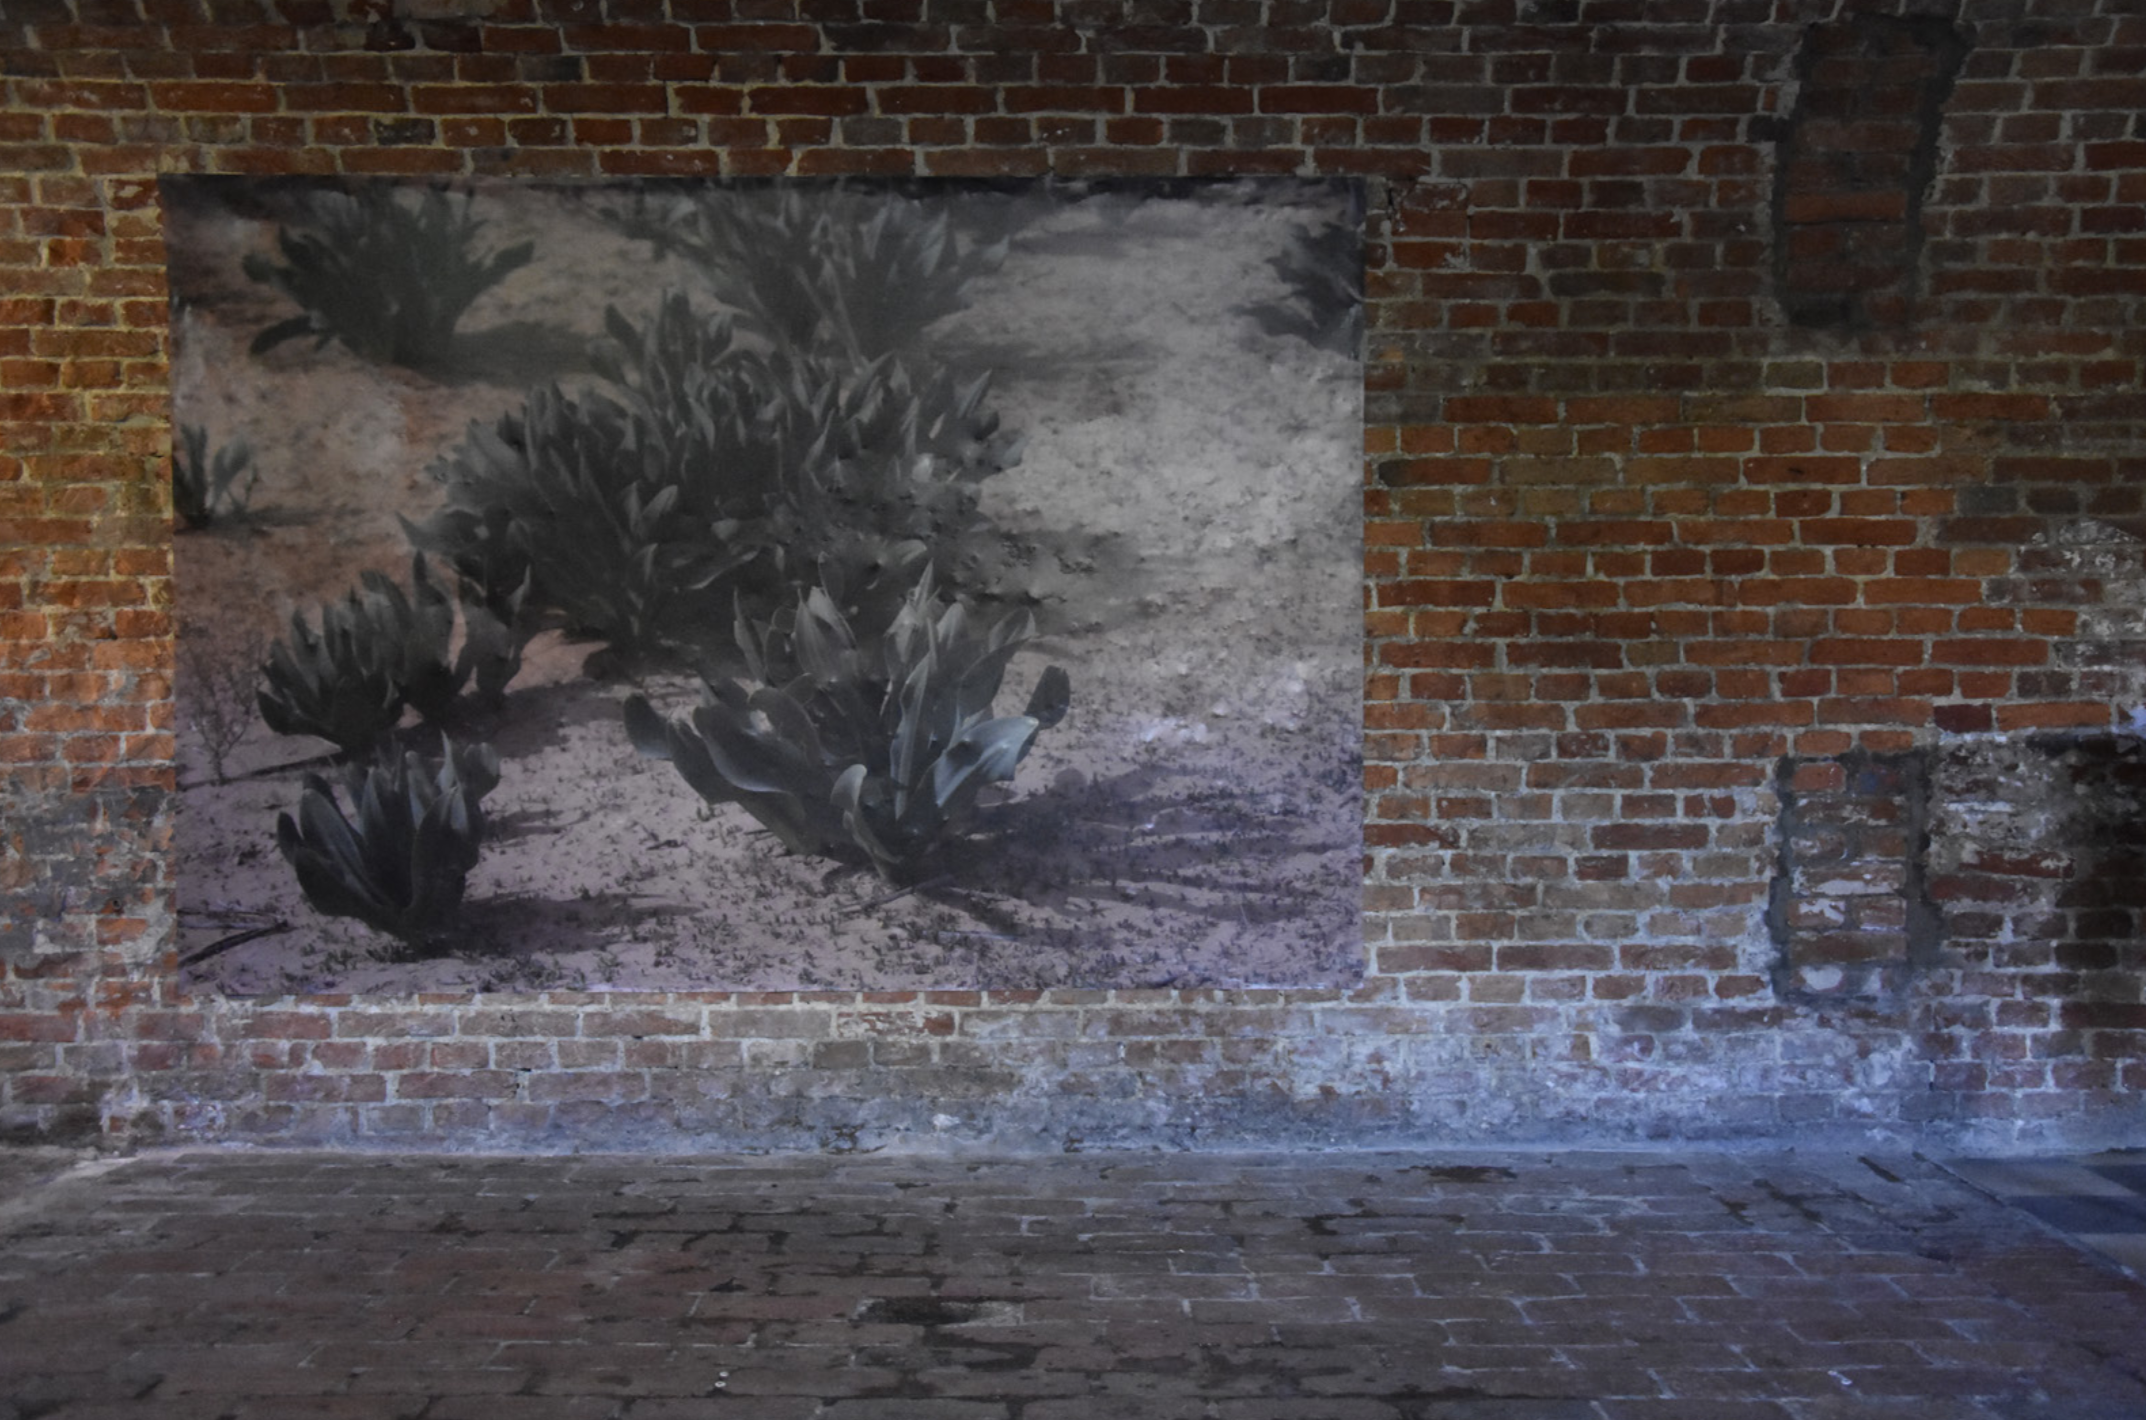 Julie Deutsch, 'Boussaye', impression digitale sur dos bleu, 93,3x 139,4 cm. Exposition "From Anywhere to Anywhere" à la Maison des Arts de Schaerbeek, juin 2019, curation par Dounia Mojahid